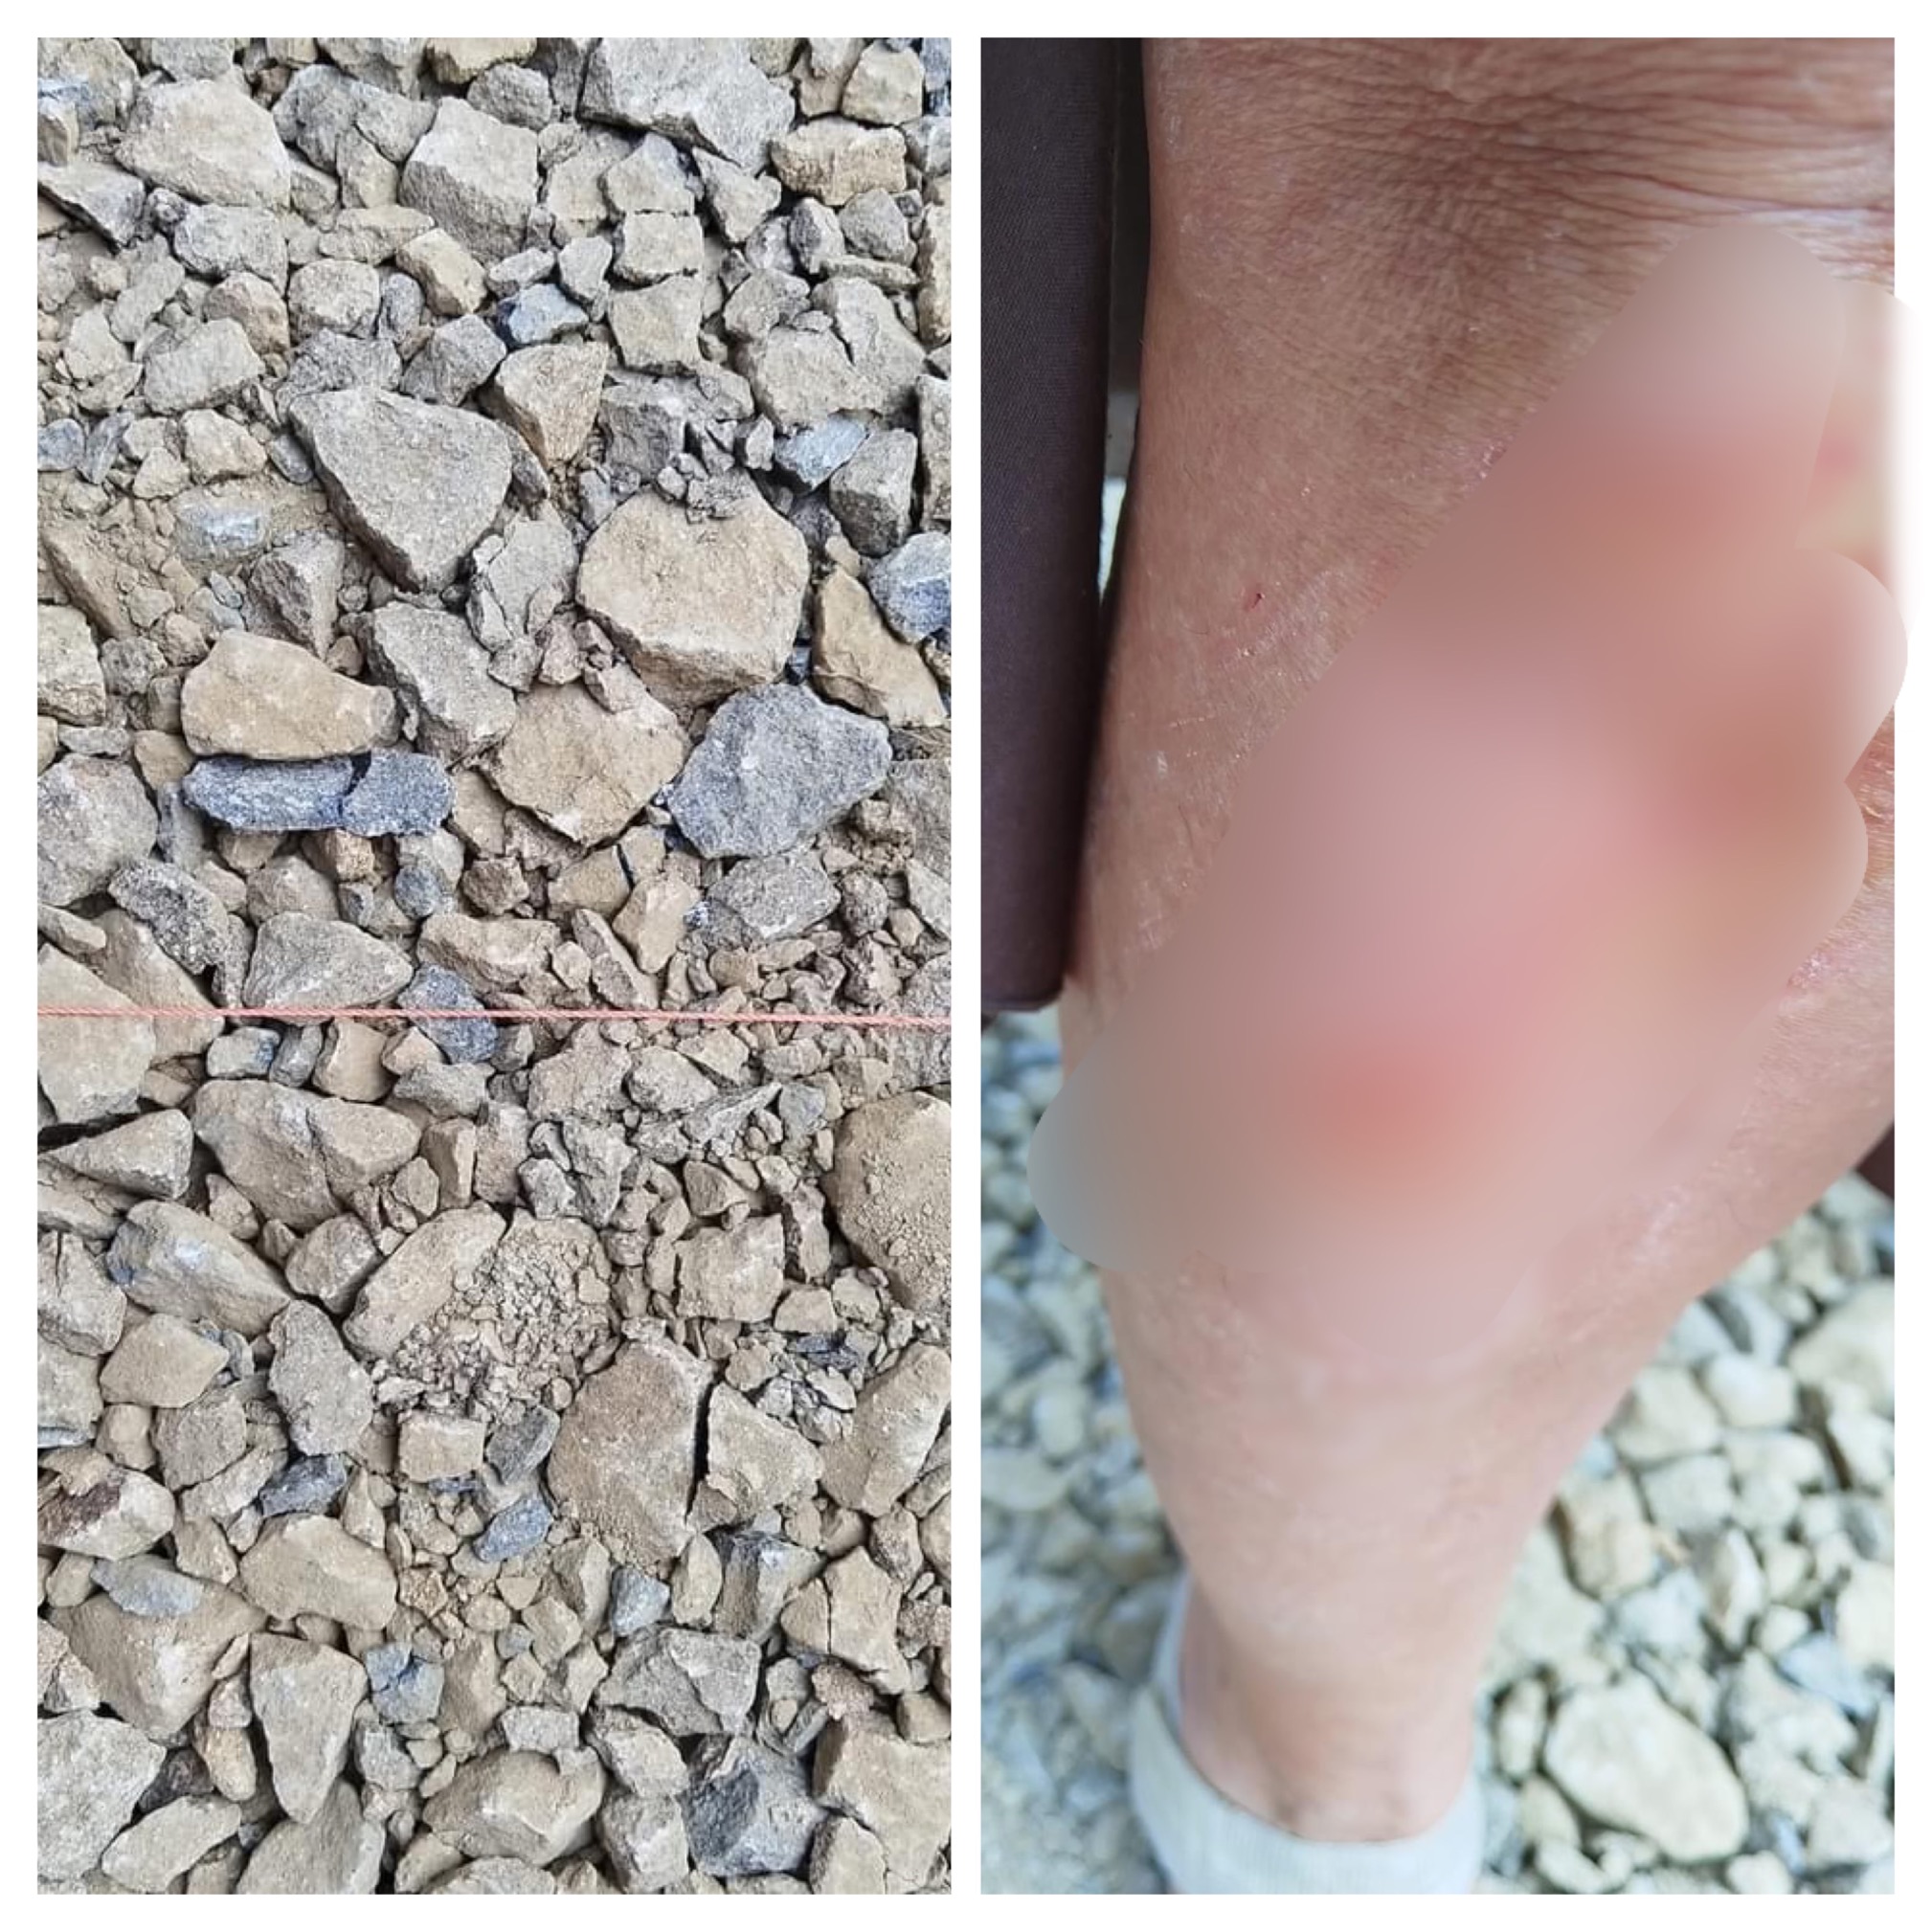 O clujeancă și-a nenorocit genunchiul, după ce s-a împiedicat în șantierul de pe strada Universității - FOTO